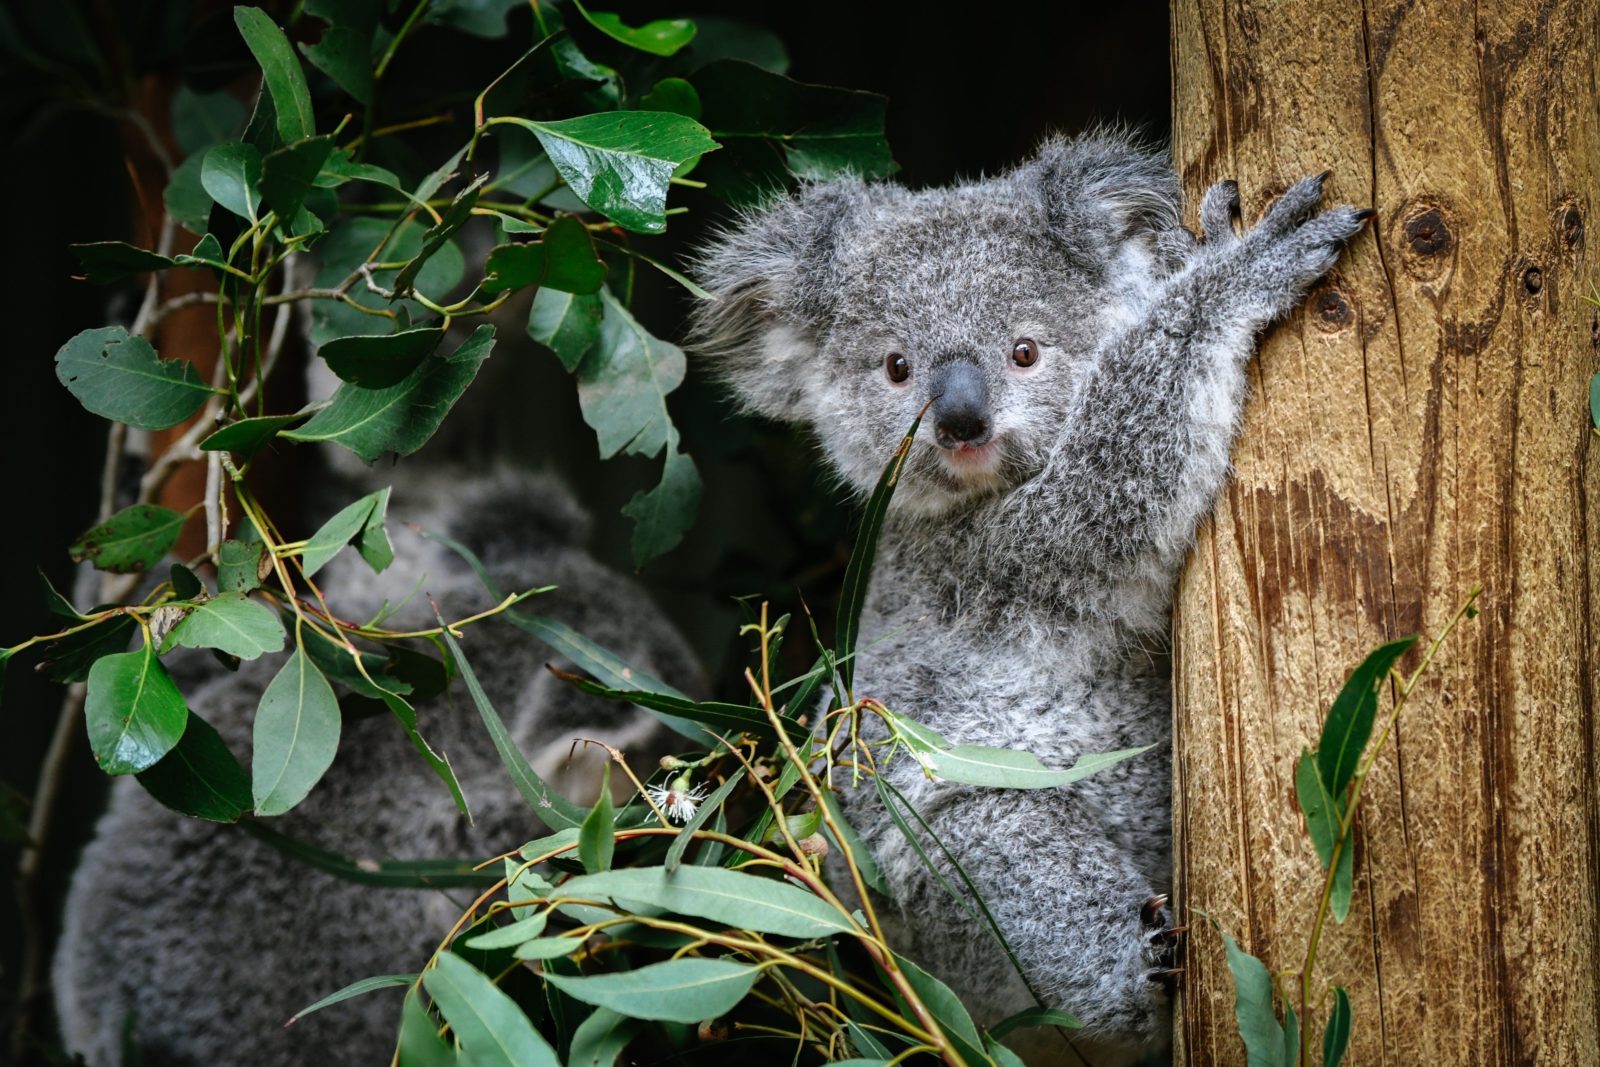 Koala joey in tree